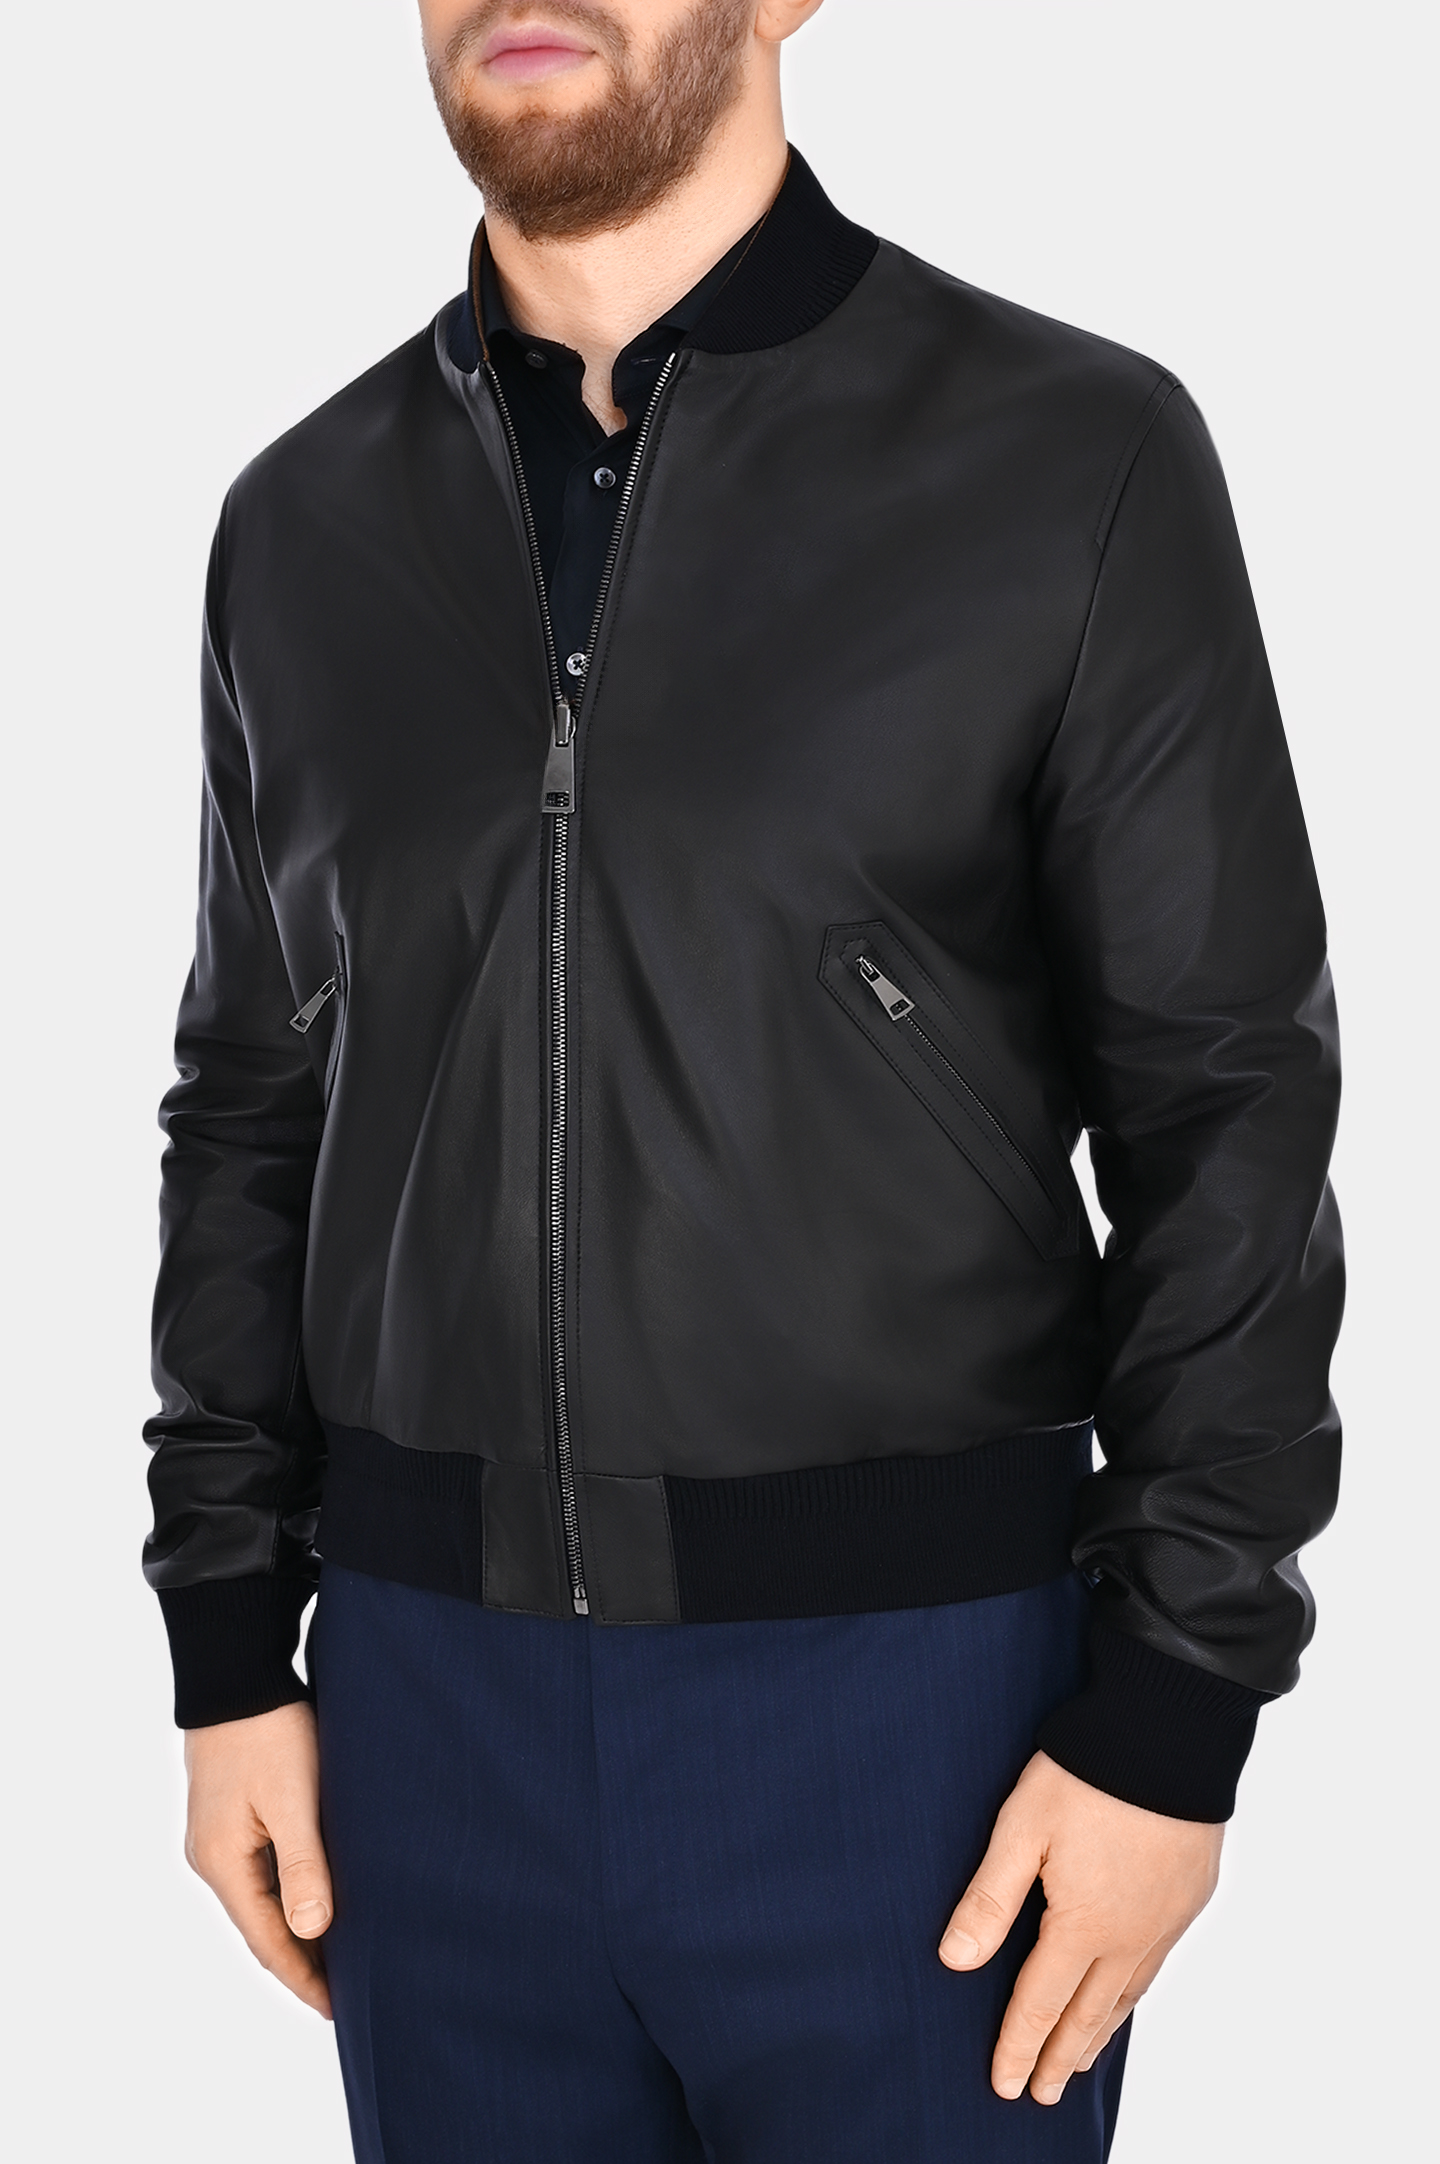 Кожаная куртка двухсторонняя CANALI LE00258 O70409, цвет: Черный, Мужской